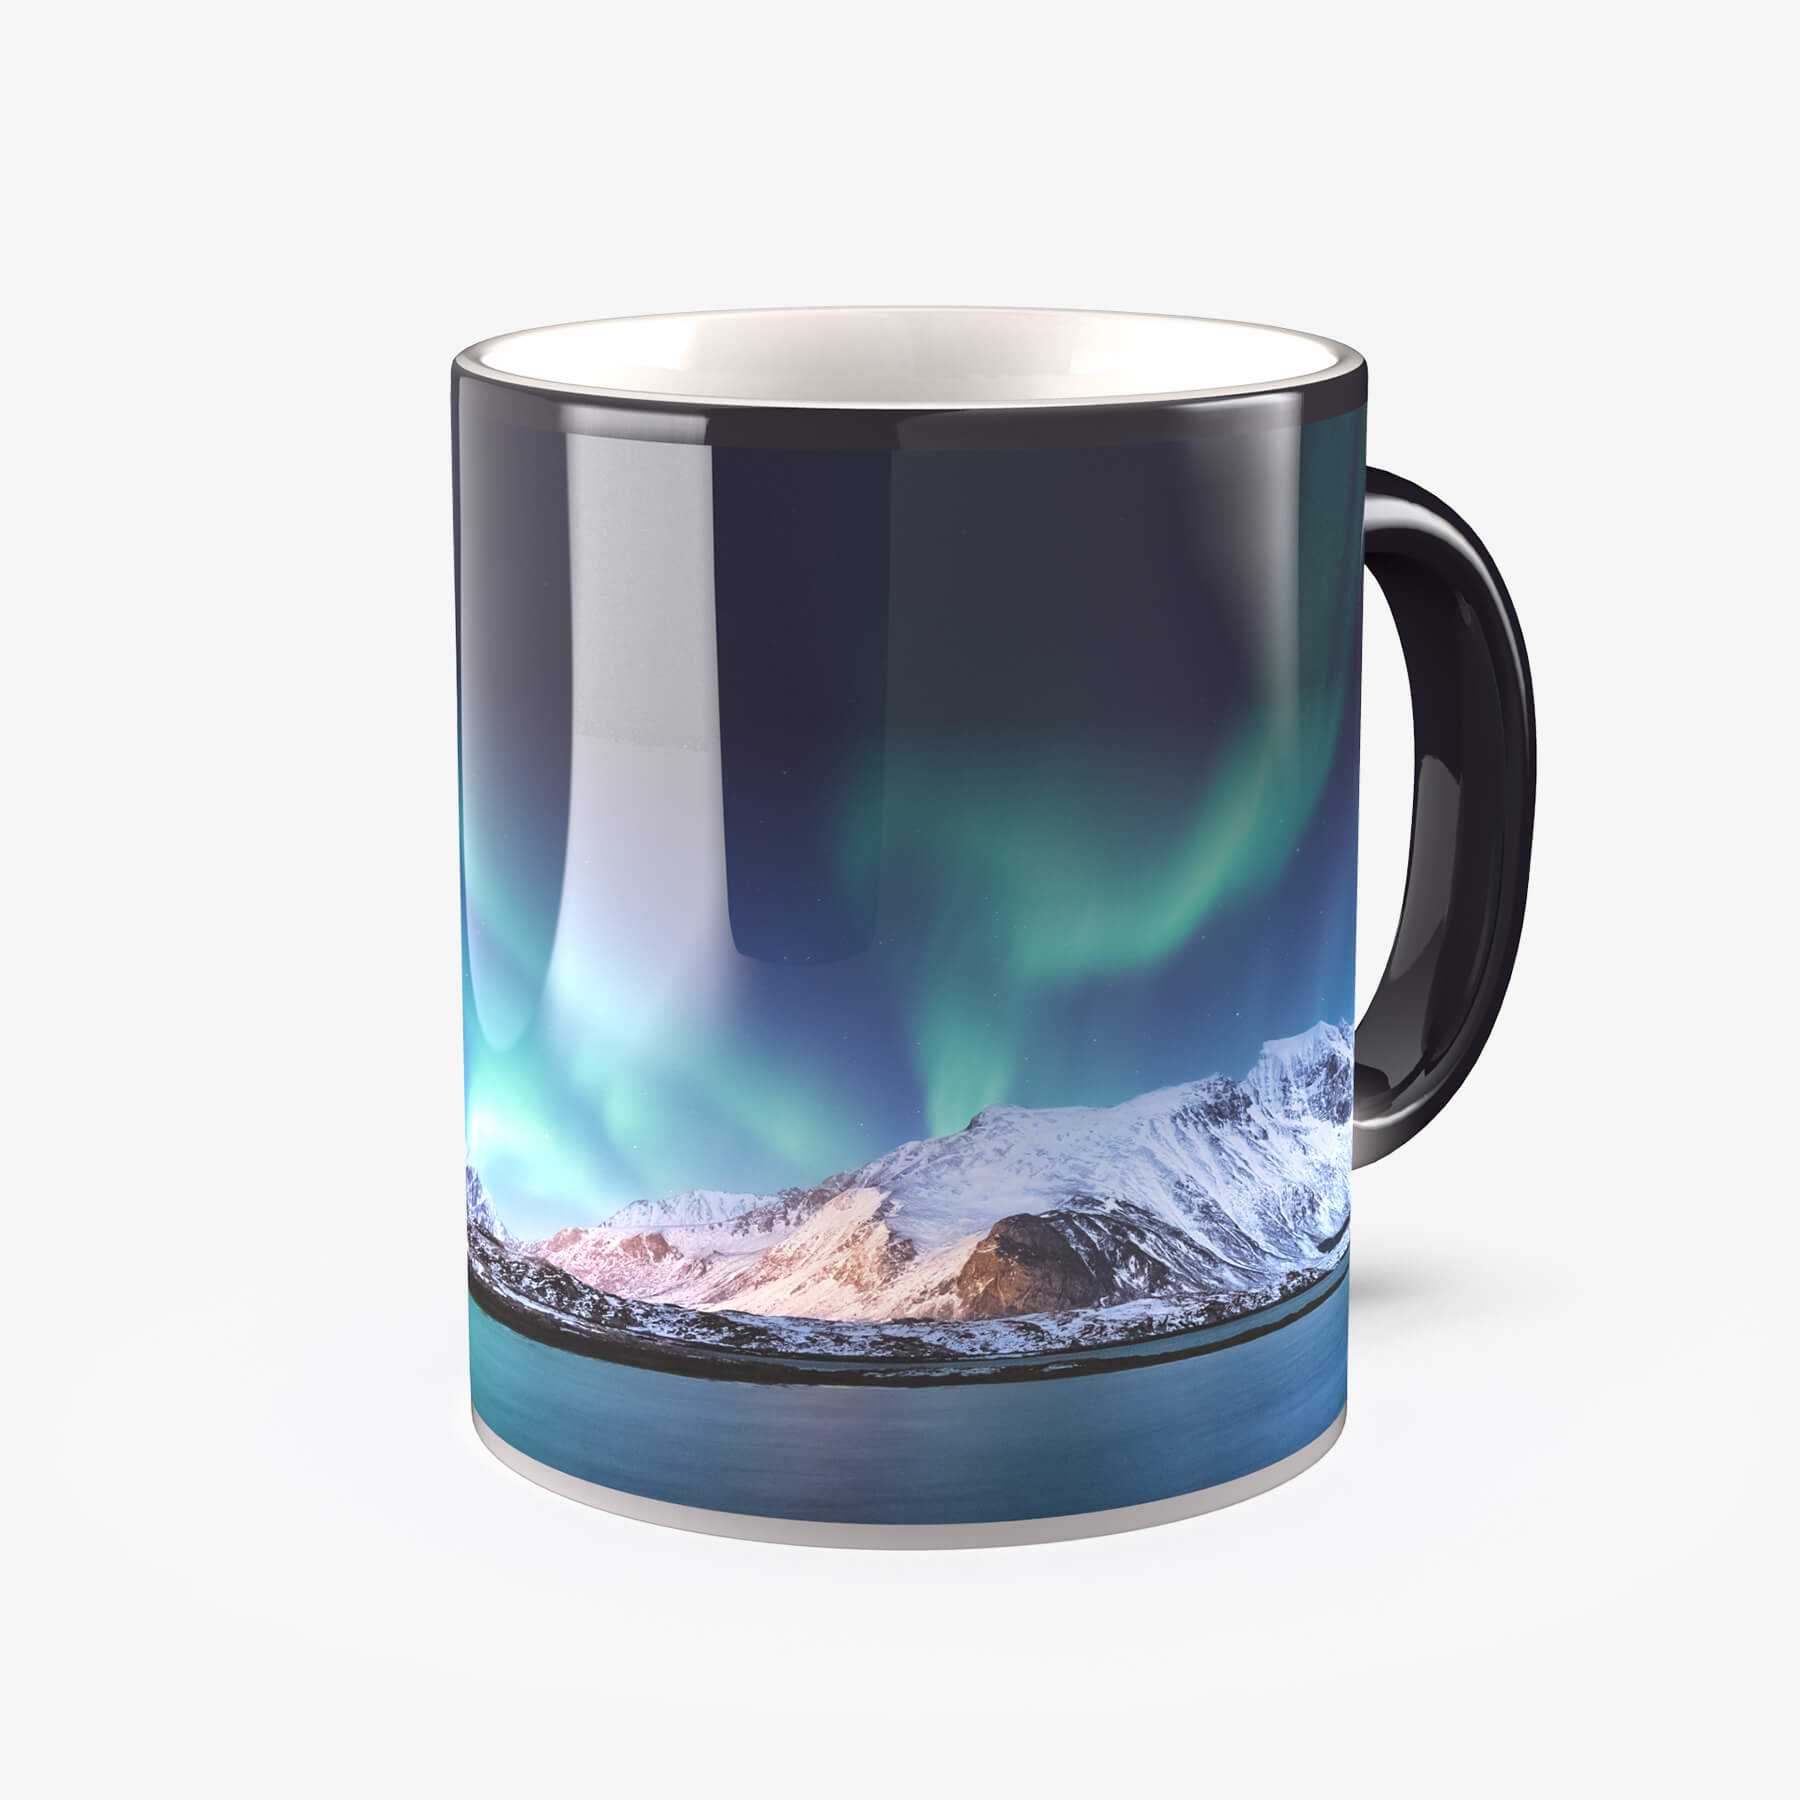 Créez un mug magique panorama avec vos propres photos